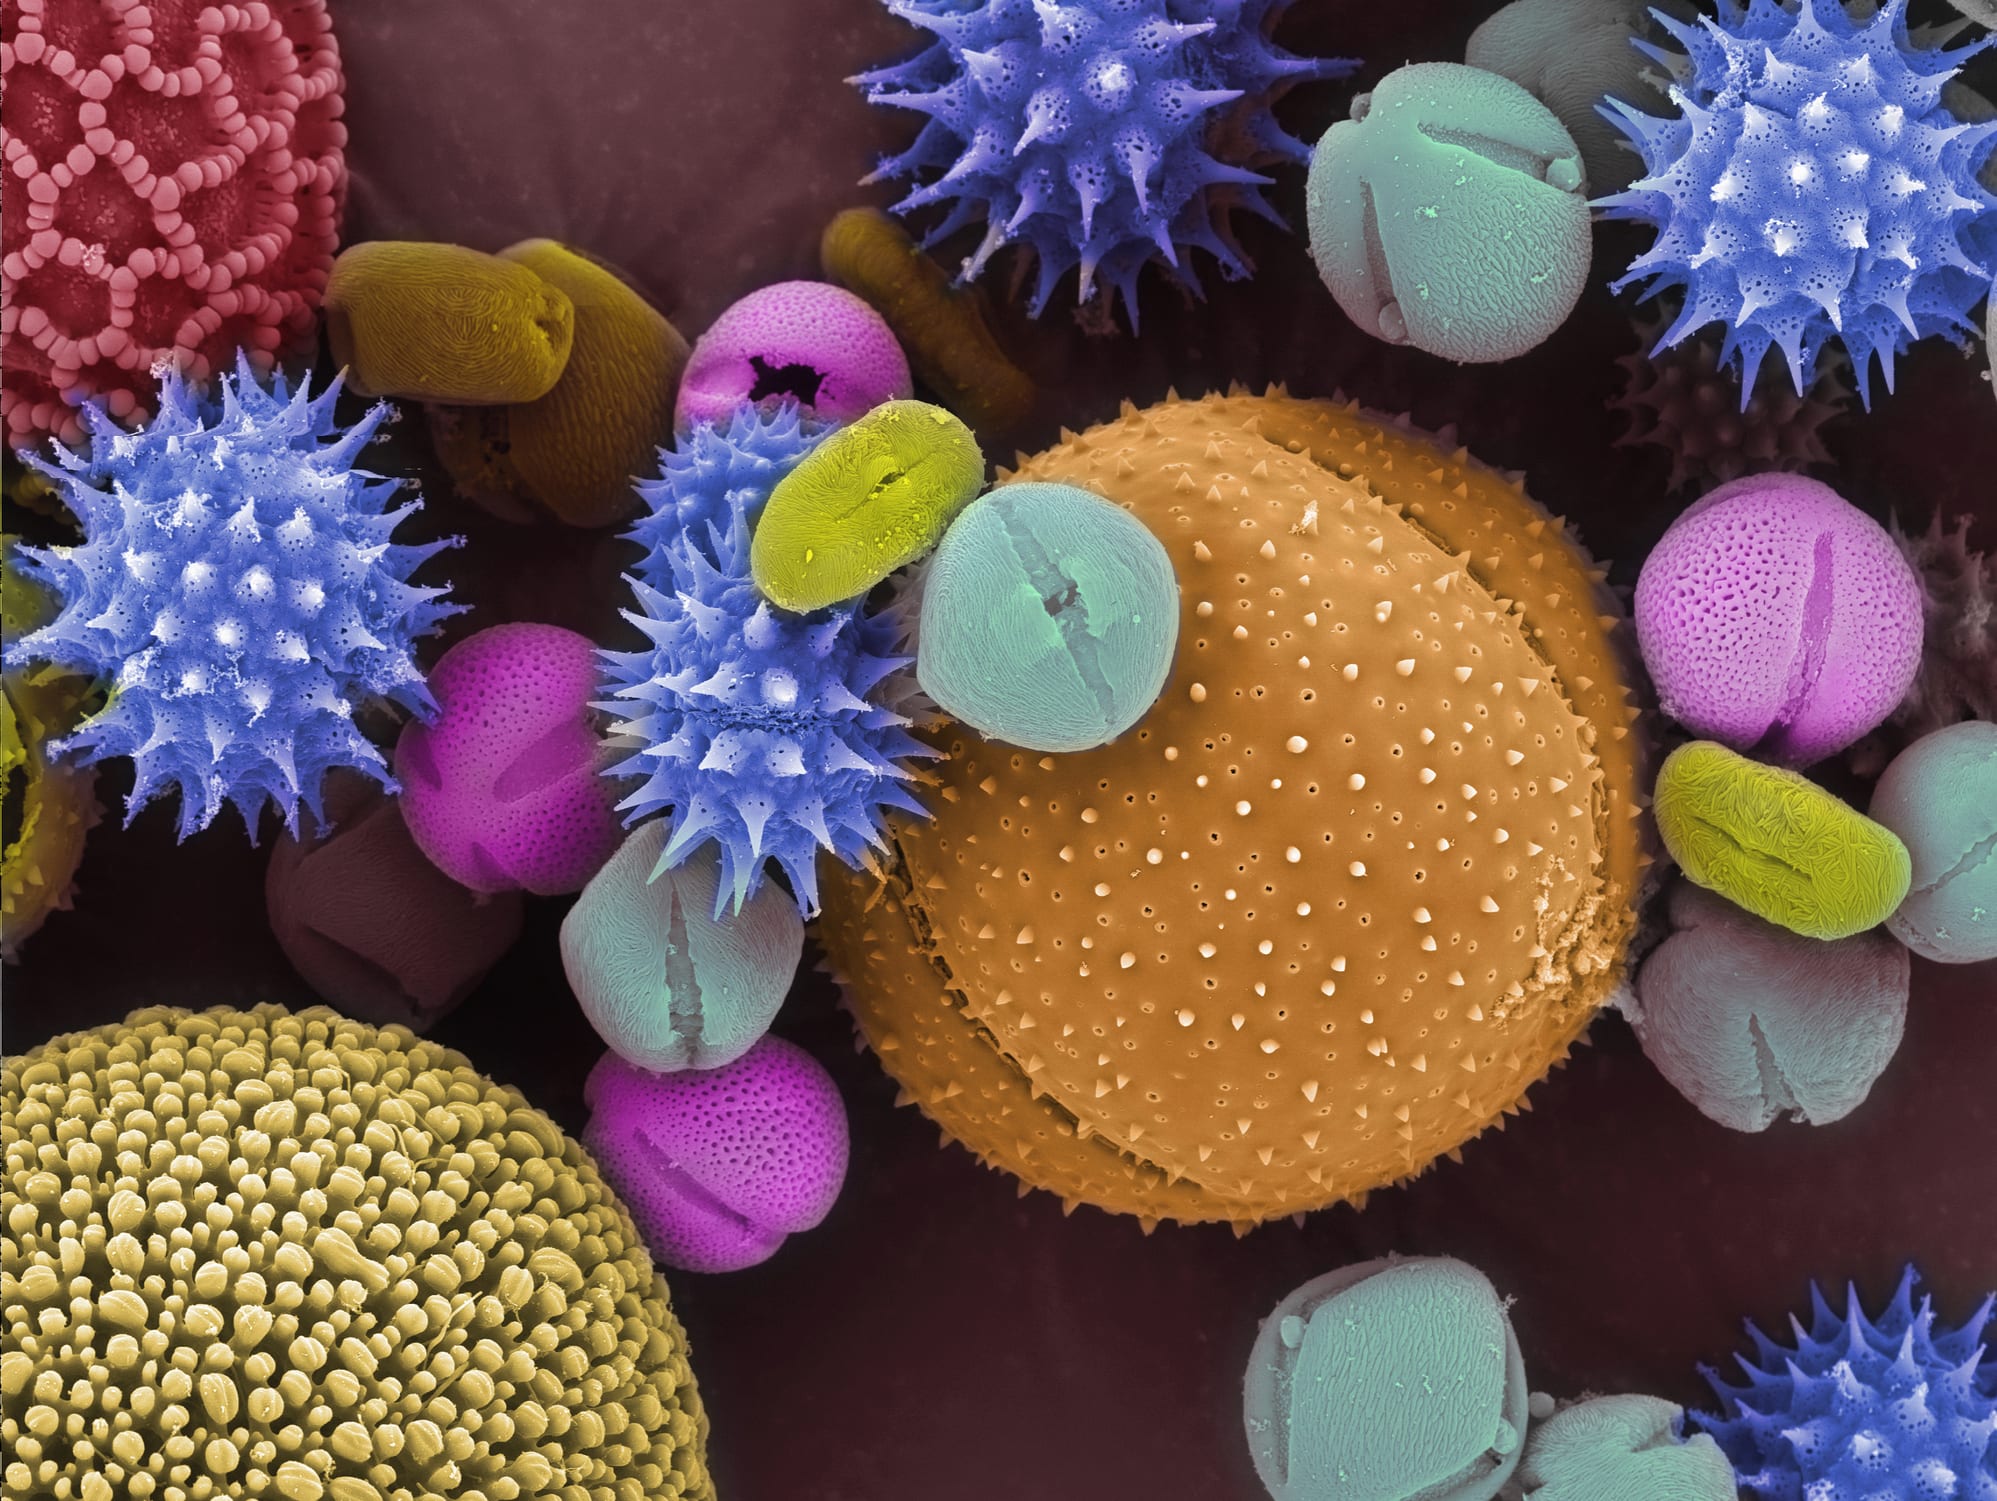 Пыль пыльца. Пыльца микрофотографии. Пыльца электронный микроскоп. Пыльца цветка под микроскопом. Пыльцевые зерна под микроскопом.